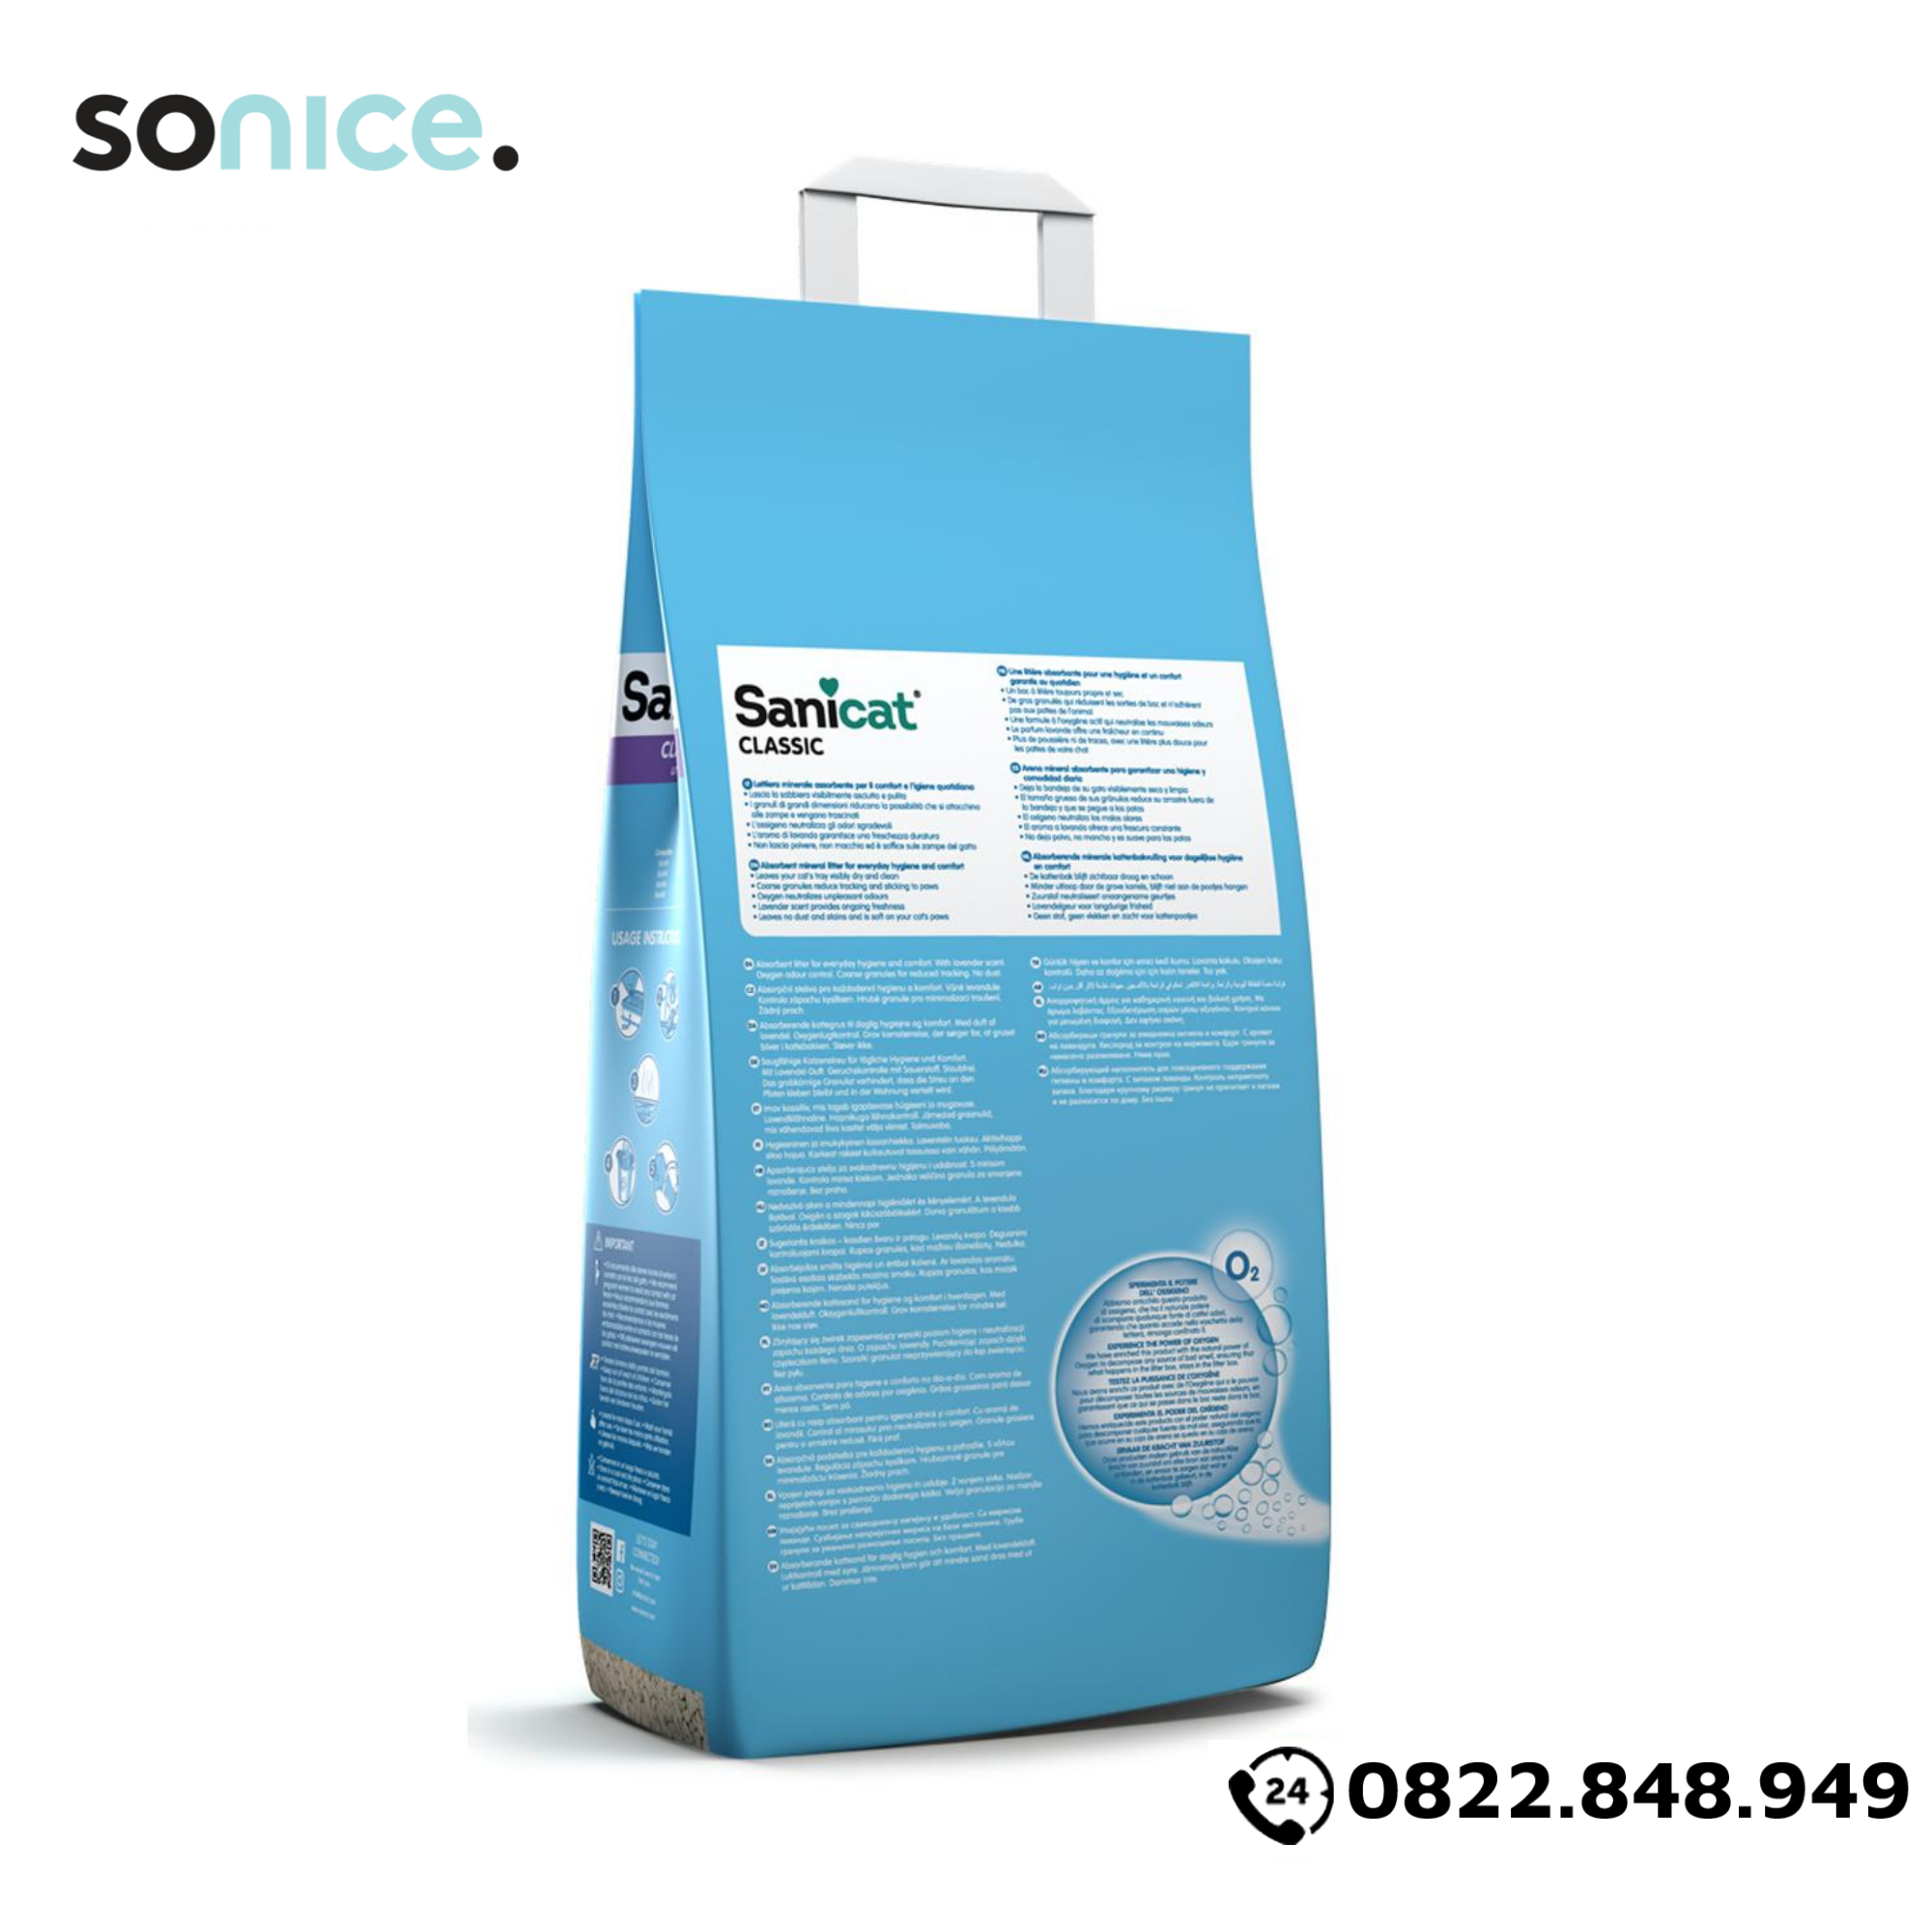  Cát vệ sinh Sanicat Classic Litter Oxygen Odour Control Lavender 30L - Hương Oải hương SONICE. 